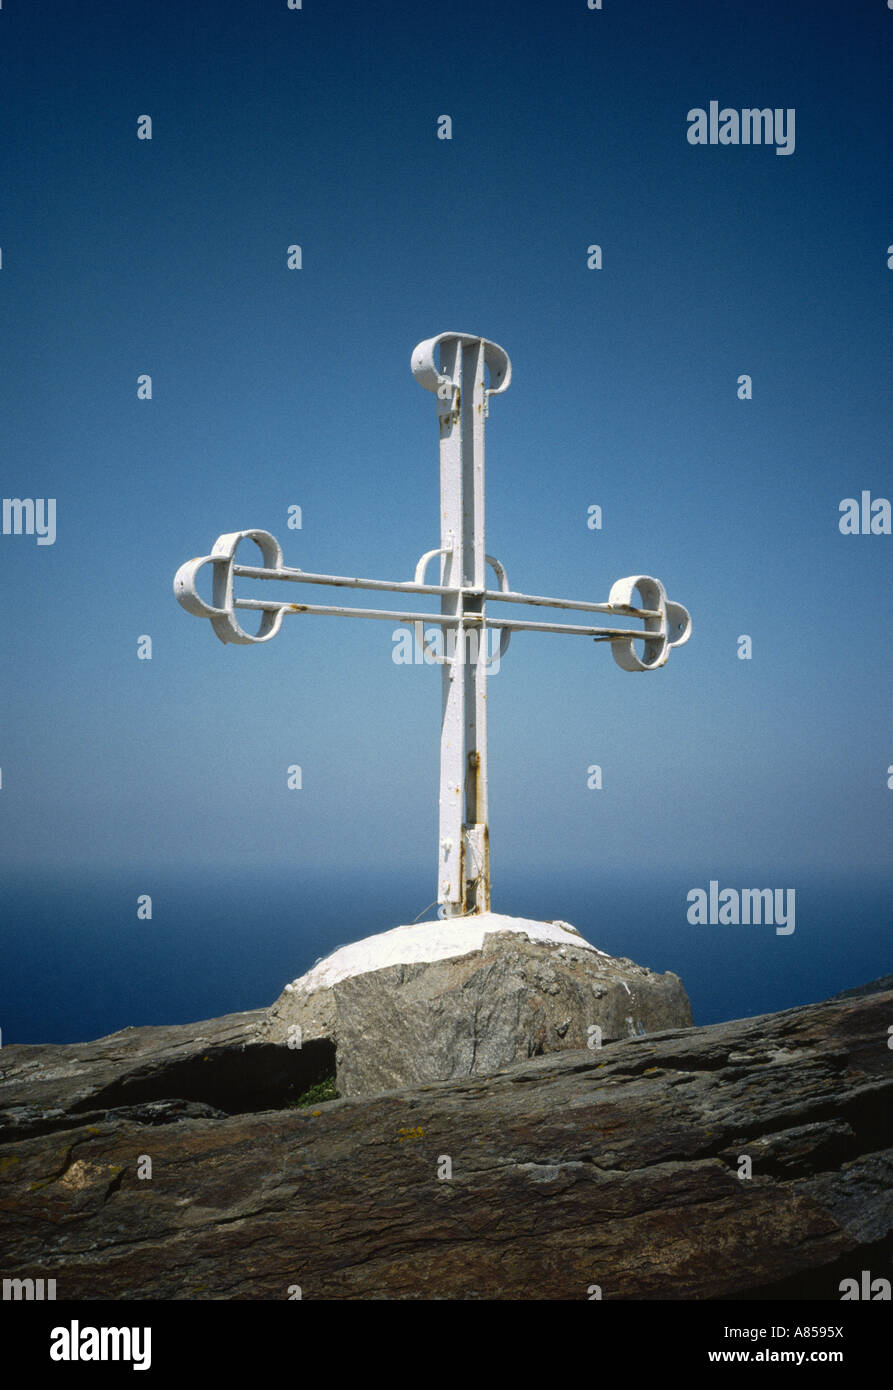 Eisen-Kreuz auf Berggipfel in Ikaria, Griechenland (Schuss auf Kodachrome 64) Stockfoto